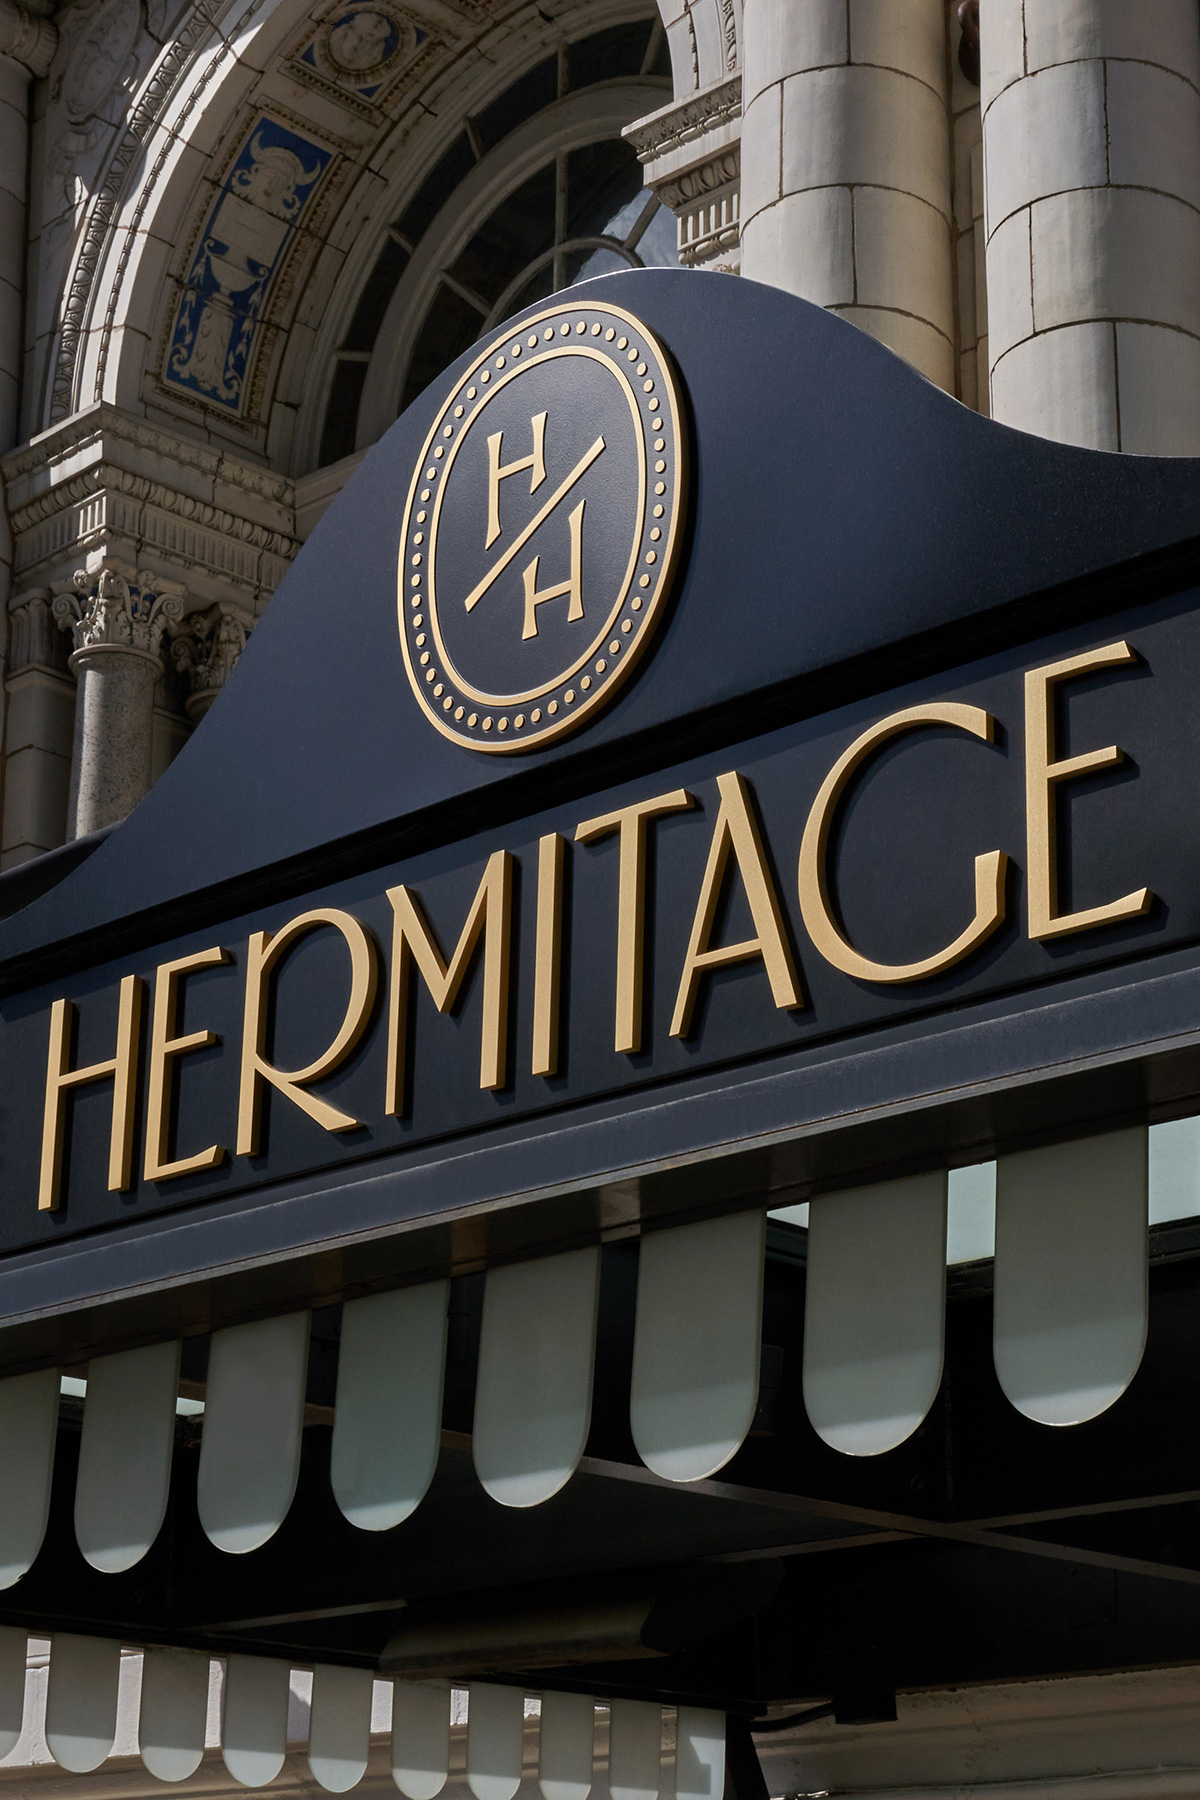 Hermitage Hotel front door signage